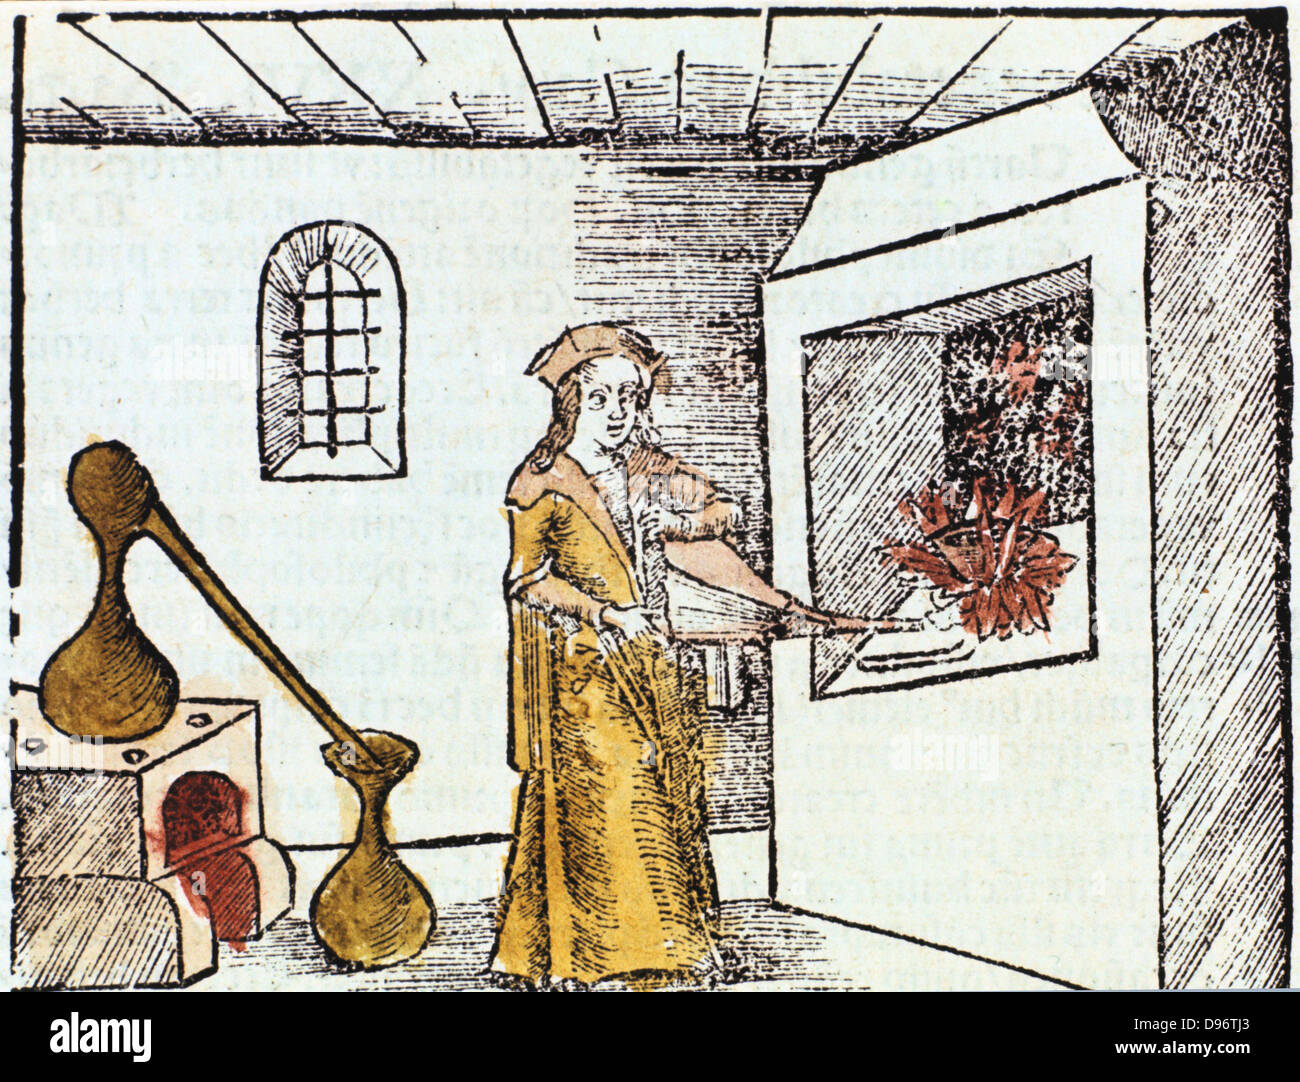 Der Chemiker, 1508, der Chemiker oder Alchemist wird mit Faltenbalg bis das Feuer unter unter einem Tiegel zu erhitzen. Hinter ihm ein alembic, stehend auf einem Ofen wird zur Destillation verwendet. Destillat kondensiert in abgerundeten Motorhaube von alembic und läuft nach unten durch Schnabel in Auffangbehälter. Von 'Margarita philosophica" ("Die Perle der Philosophie') von Gregor Reisch. (Basel, 1508). Dieses Buch war eine frühe Enzyklopädie des Wissens für Studenten. Stockfoto